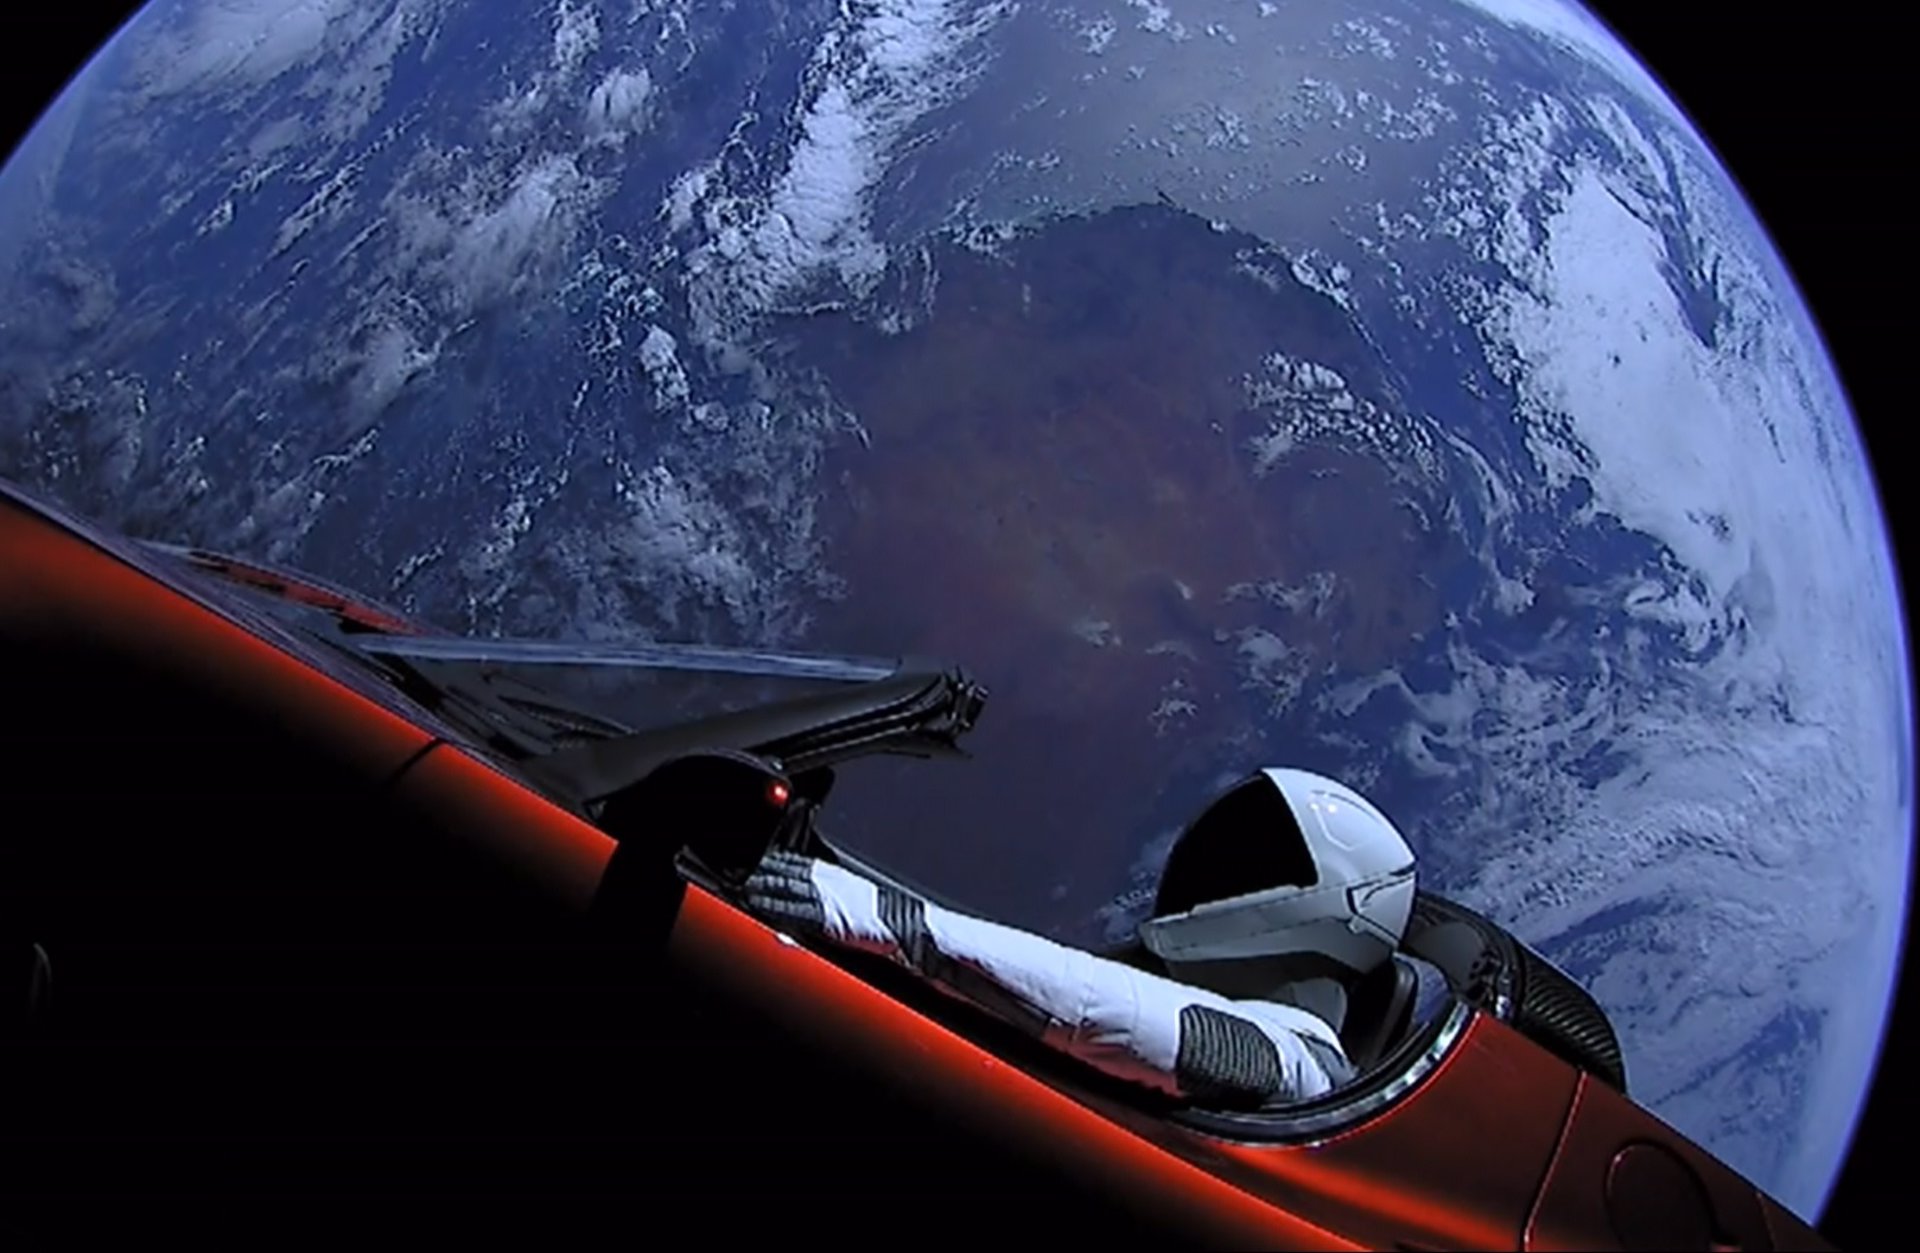 09/10/2020 Imagen del vehículo en el espacio..

El coche eléctrico Roadster de Tesla y su conductor maniquí Starman, lanzados en 2018 en la misión inaugural del cohete Falcon Heavy de Space X, han hecho su primera aproximación cercana a Marte.

POLITICA ECONOMIA
SPACEX